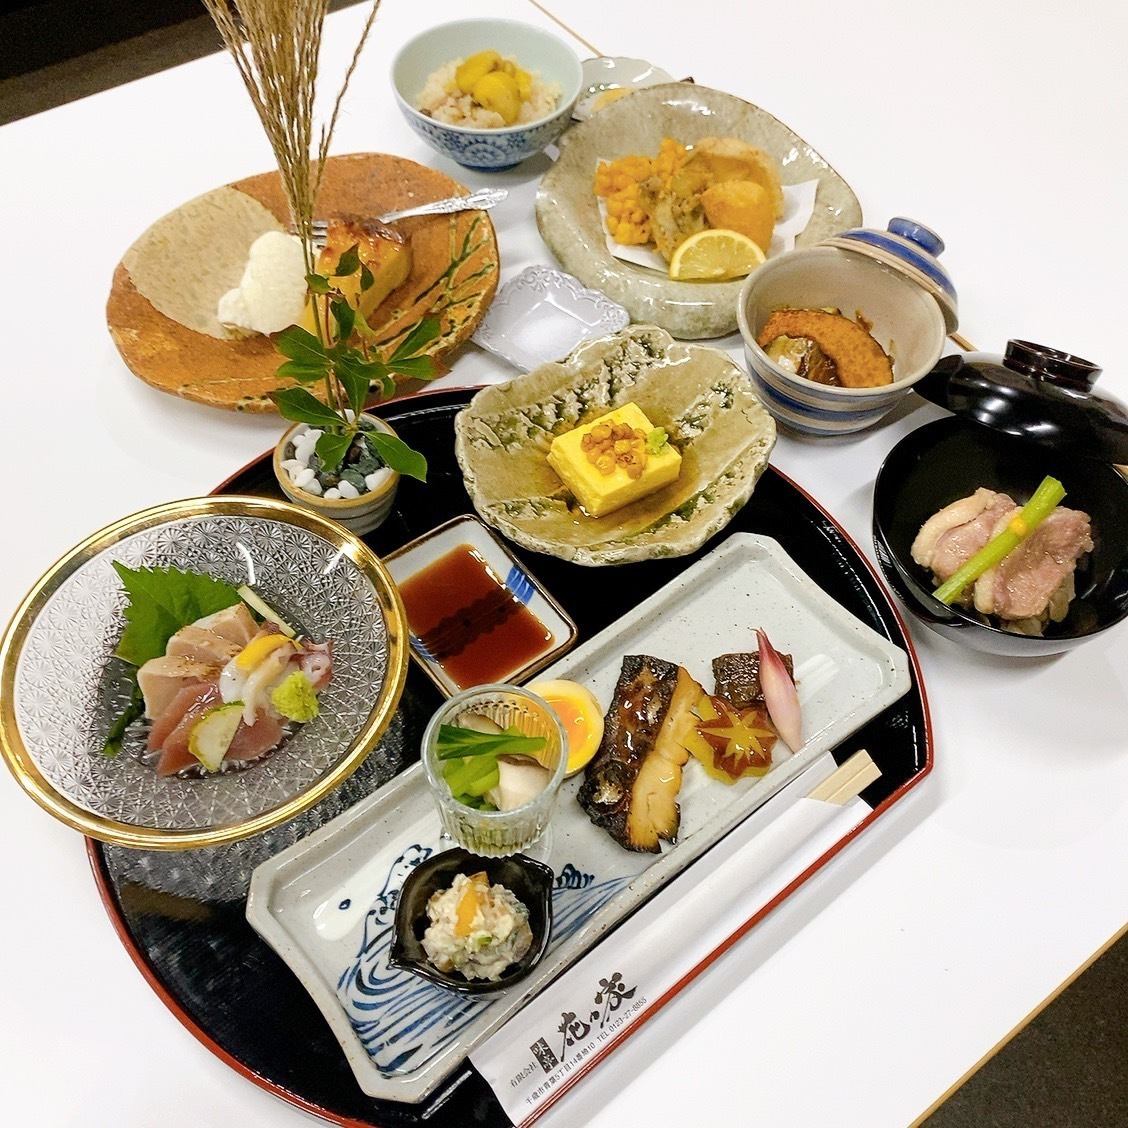 可以轻松享用鳗鱼、怀石料理、套餐等的日式餐厅。我们还有私人房间！